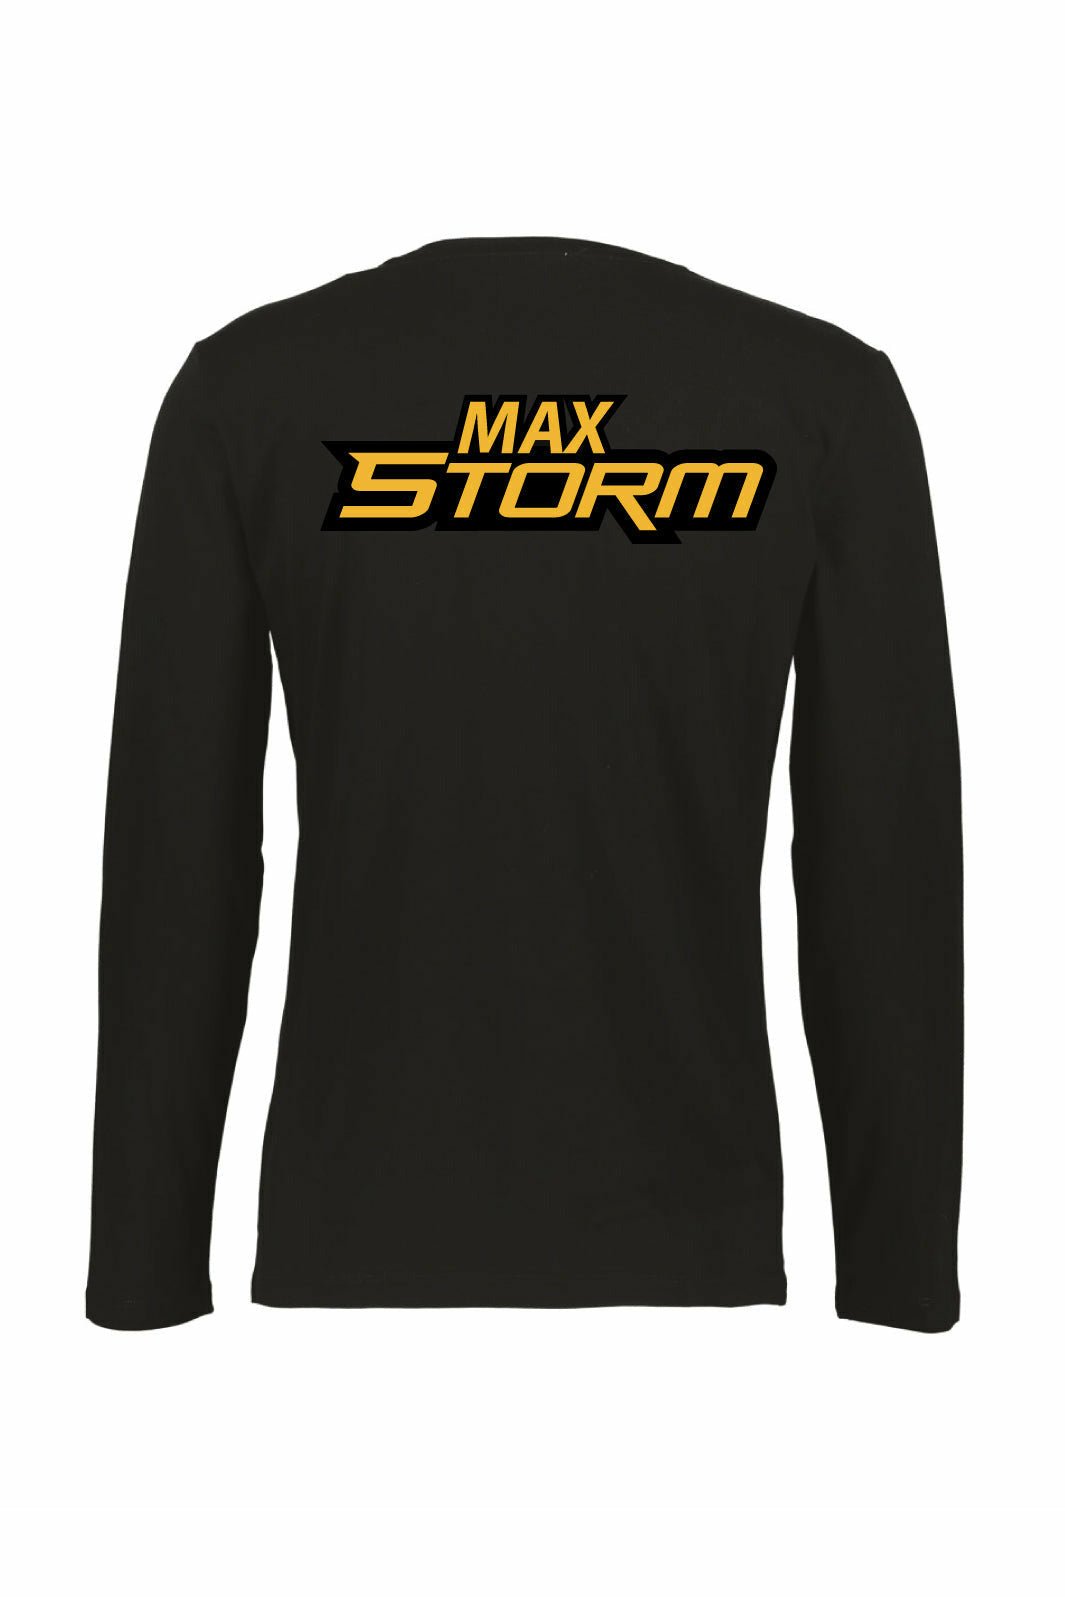 Max Storm Long Sleeve Tee - Oddball Workshop